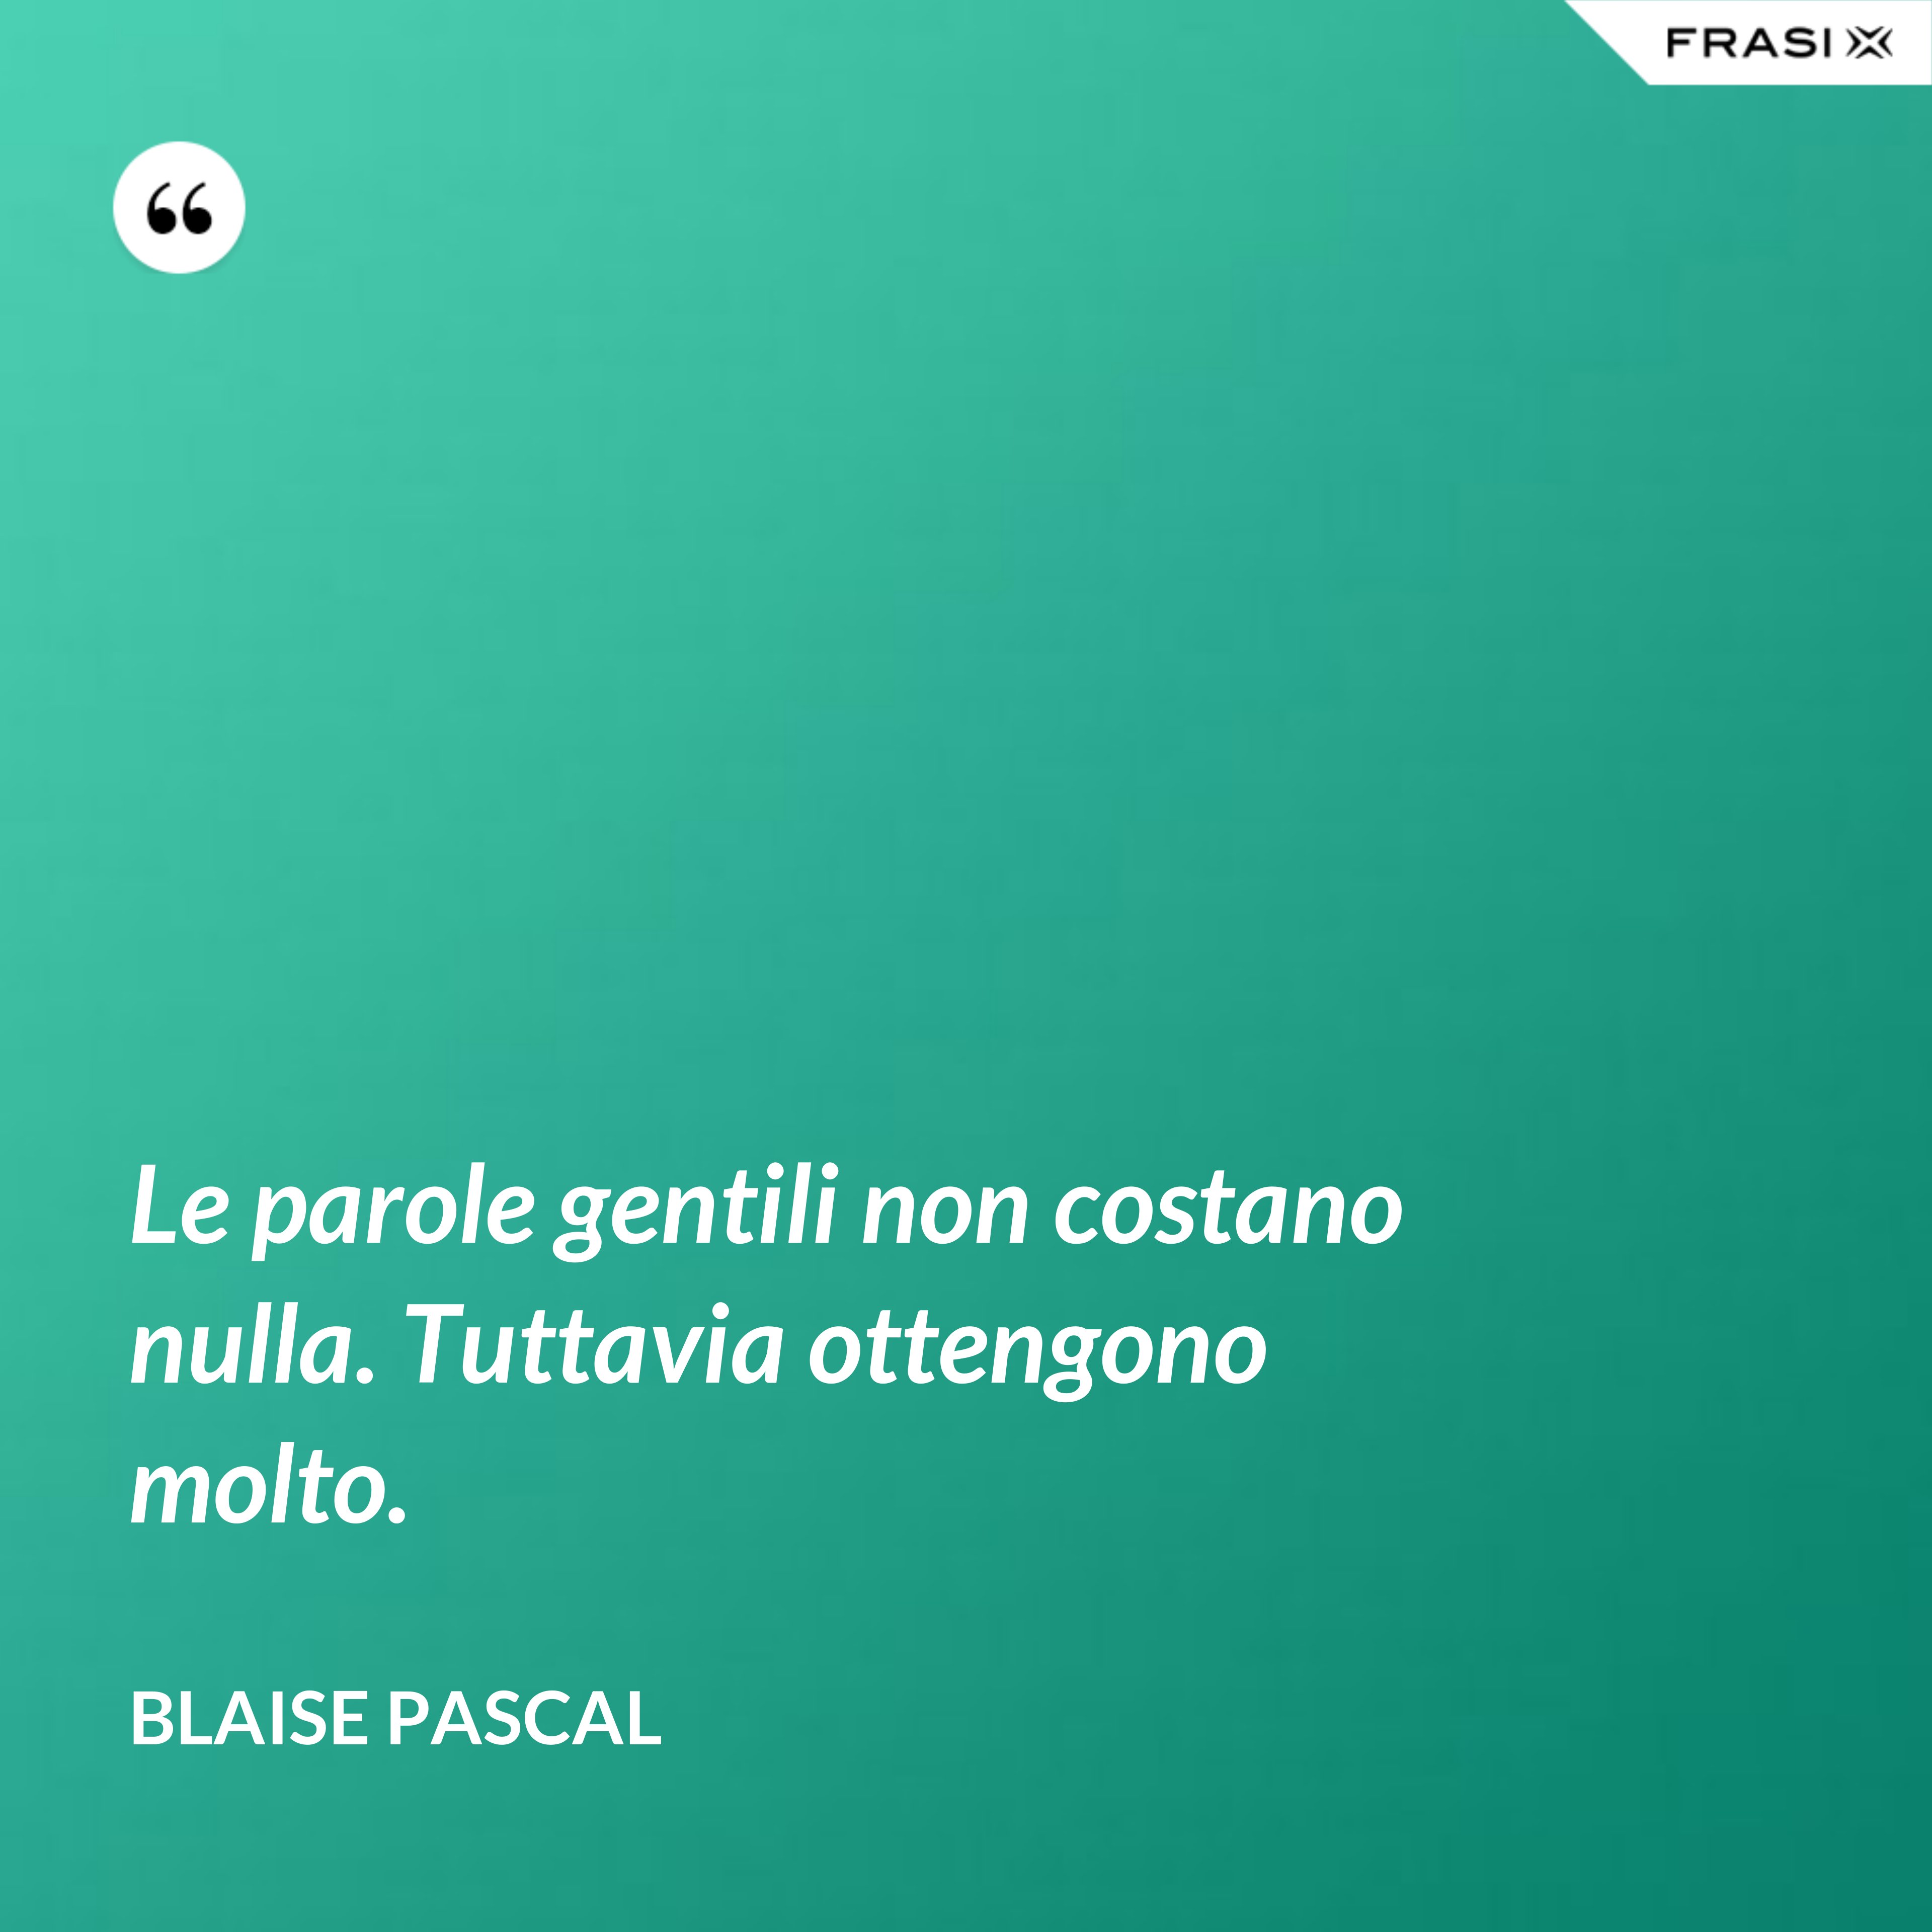 Le parole gentili non costano nulla. Tuttavia ottengono molto. - Blaise Pascal